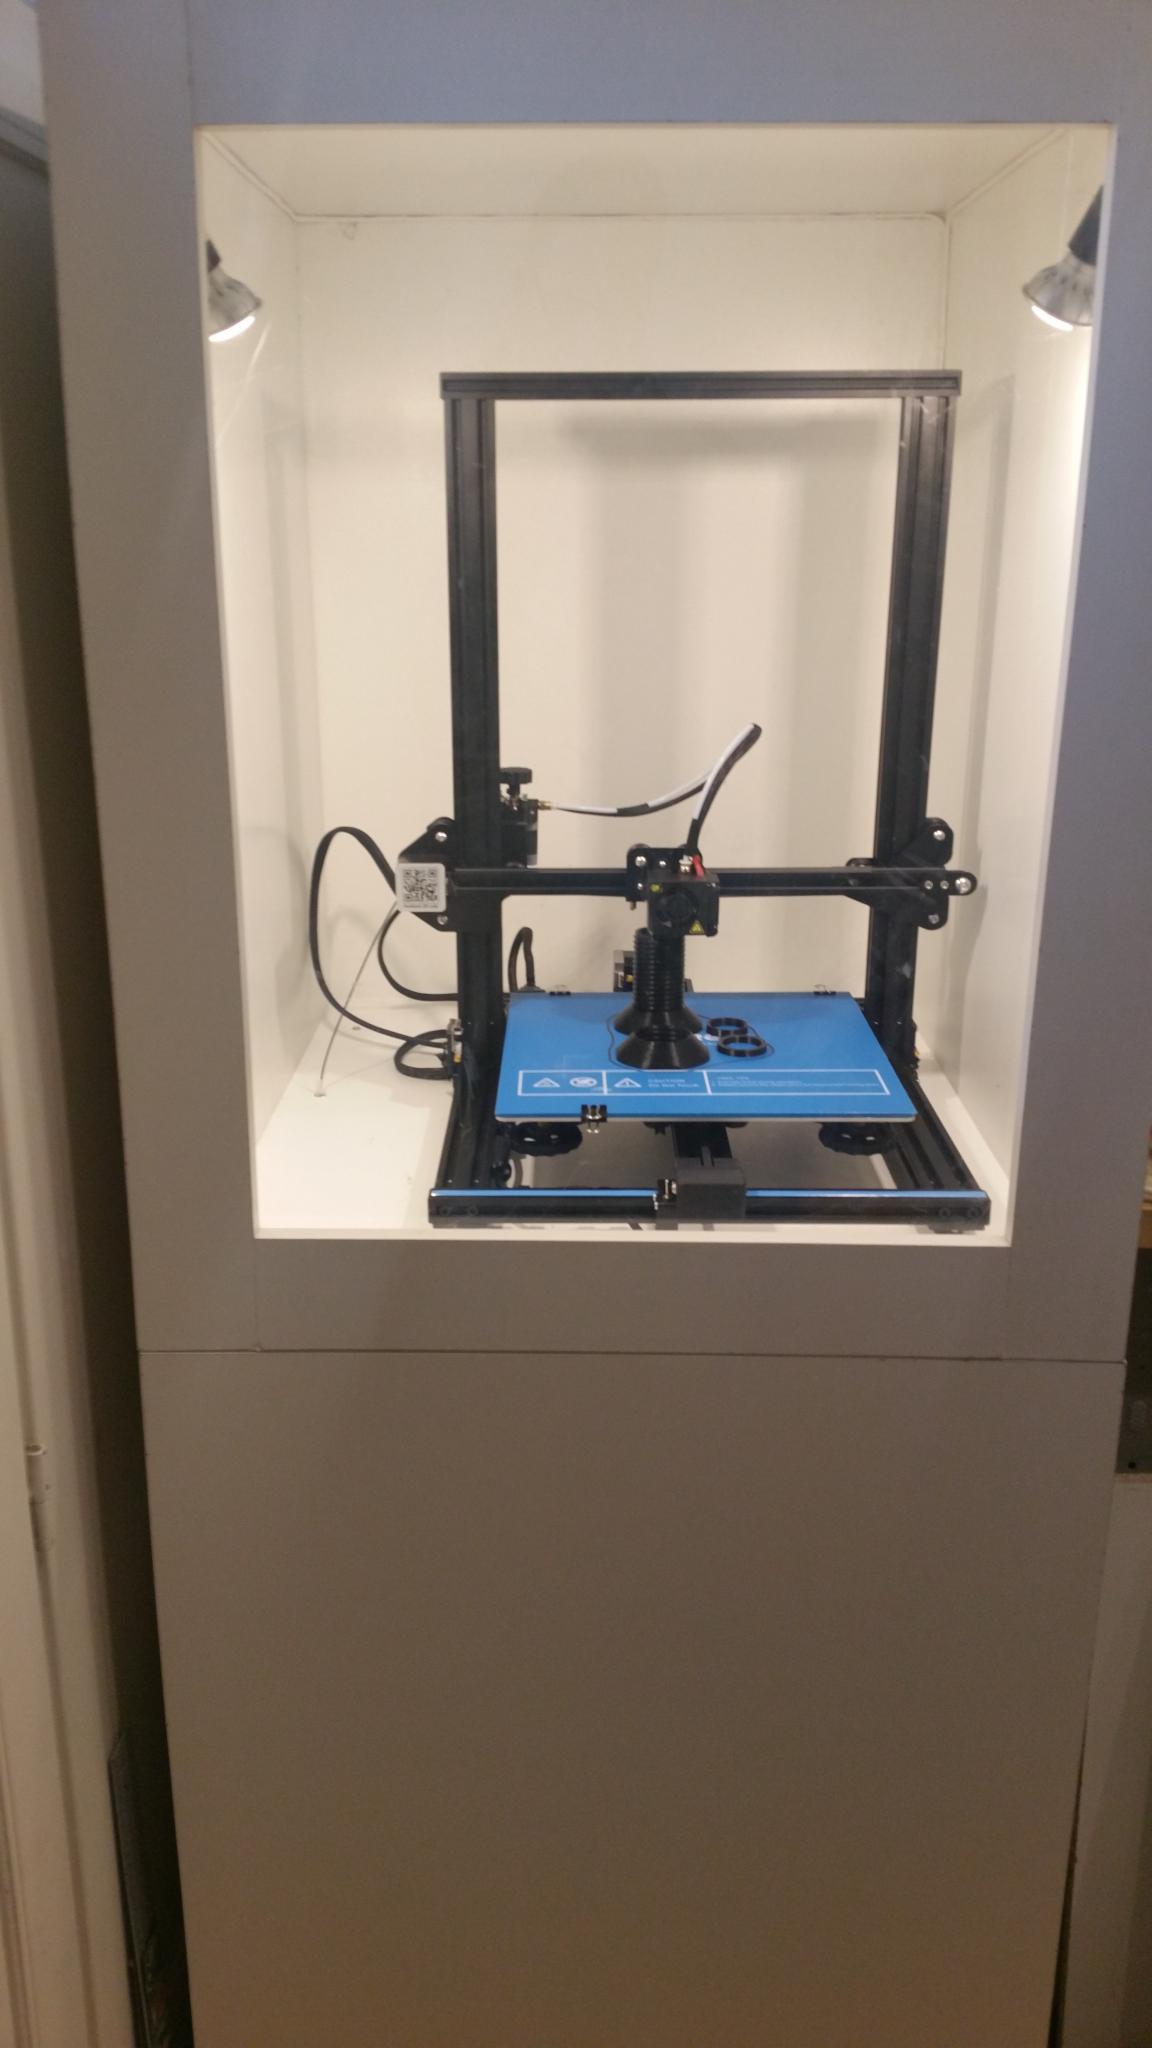 Caisson - Impression 3D et Imprimantes 3D - Robot Maker